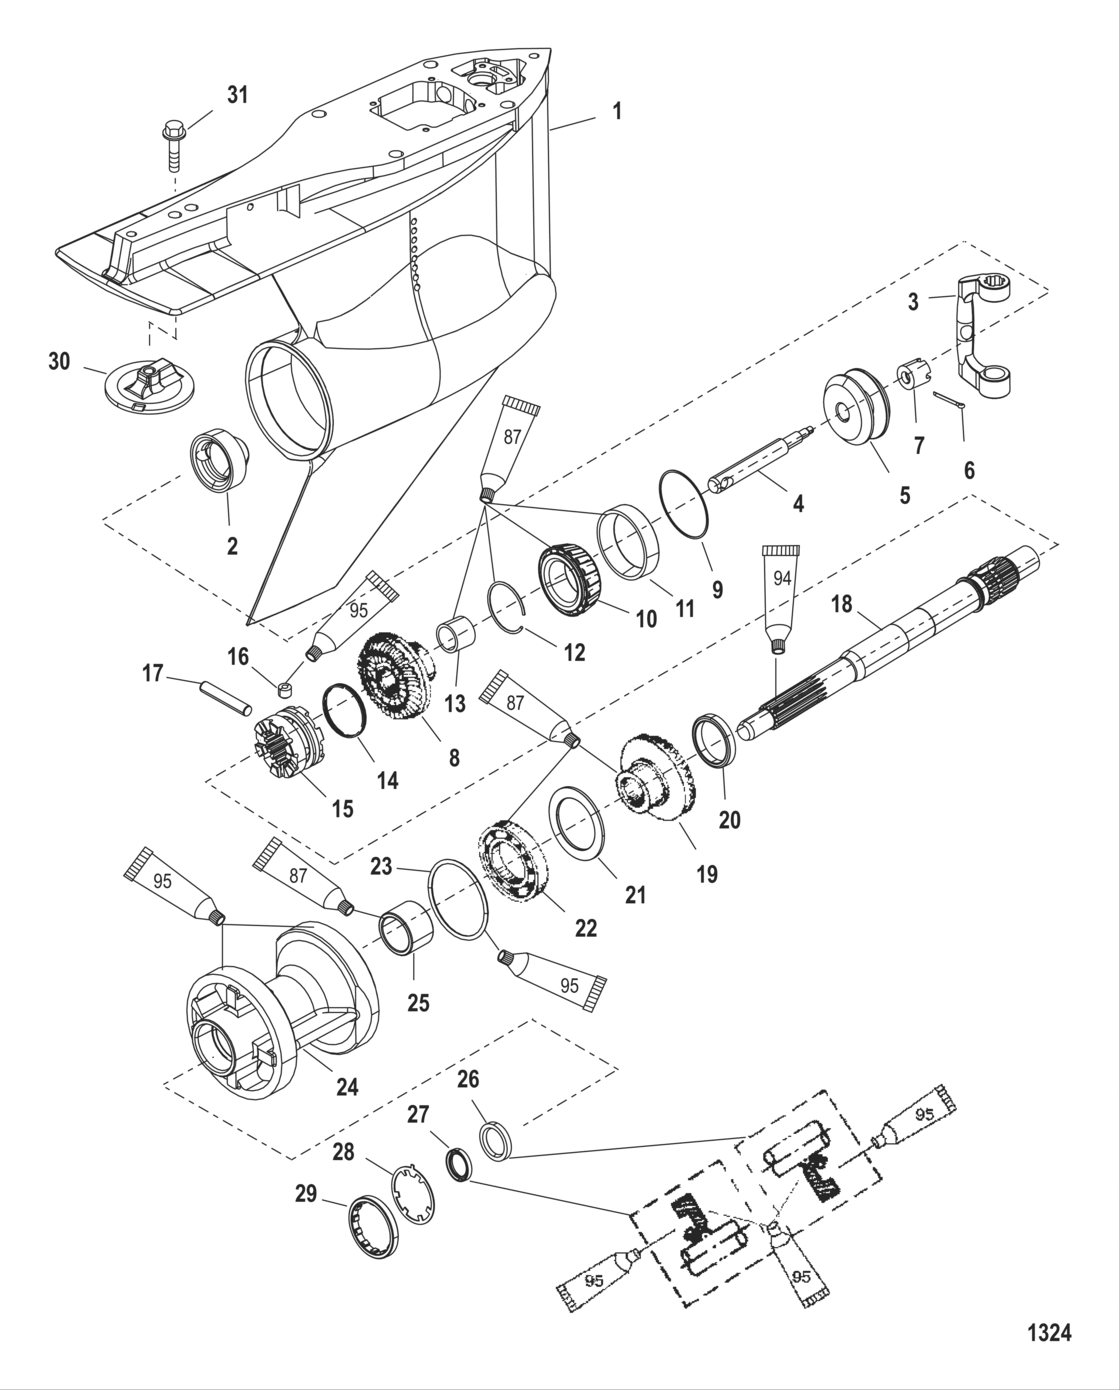 Gear Housing Propeller Shaft - Standard Rotation